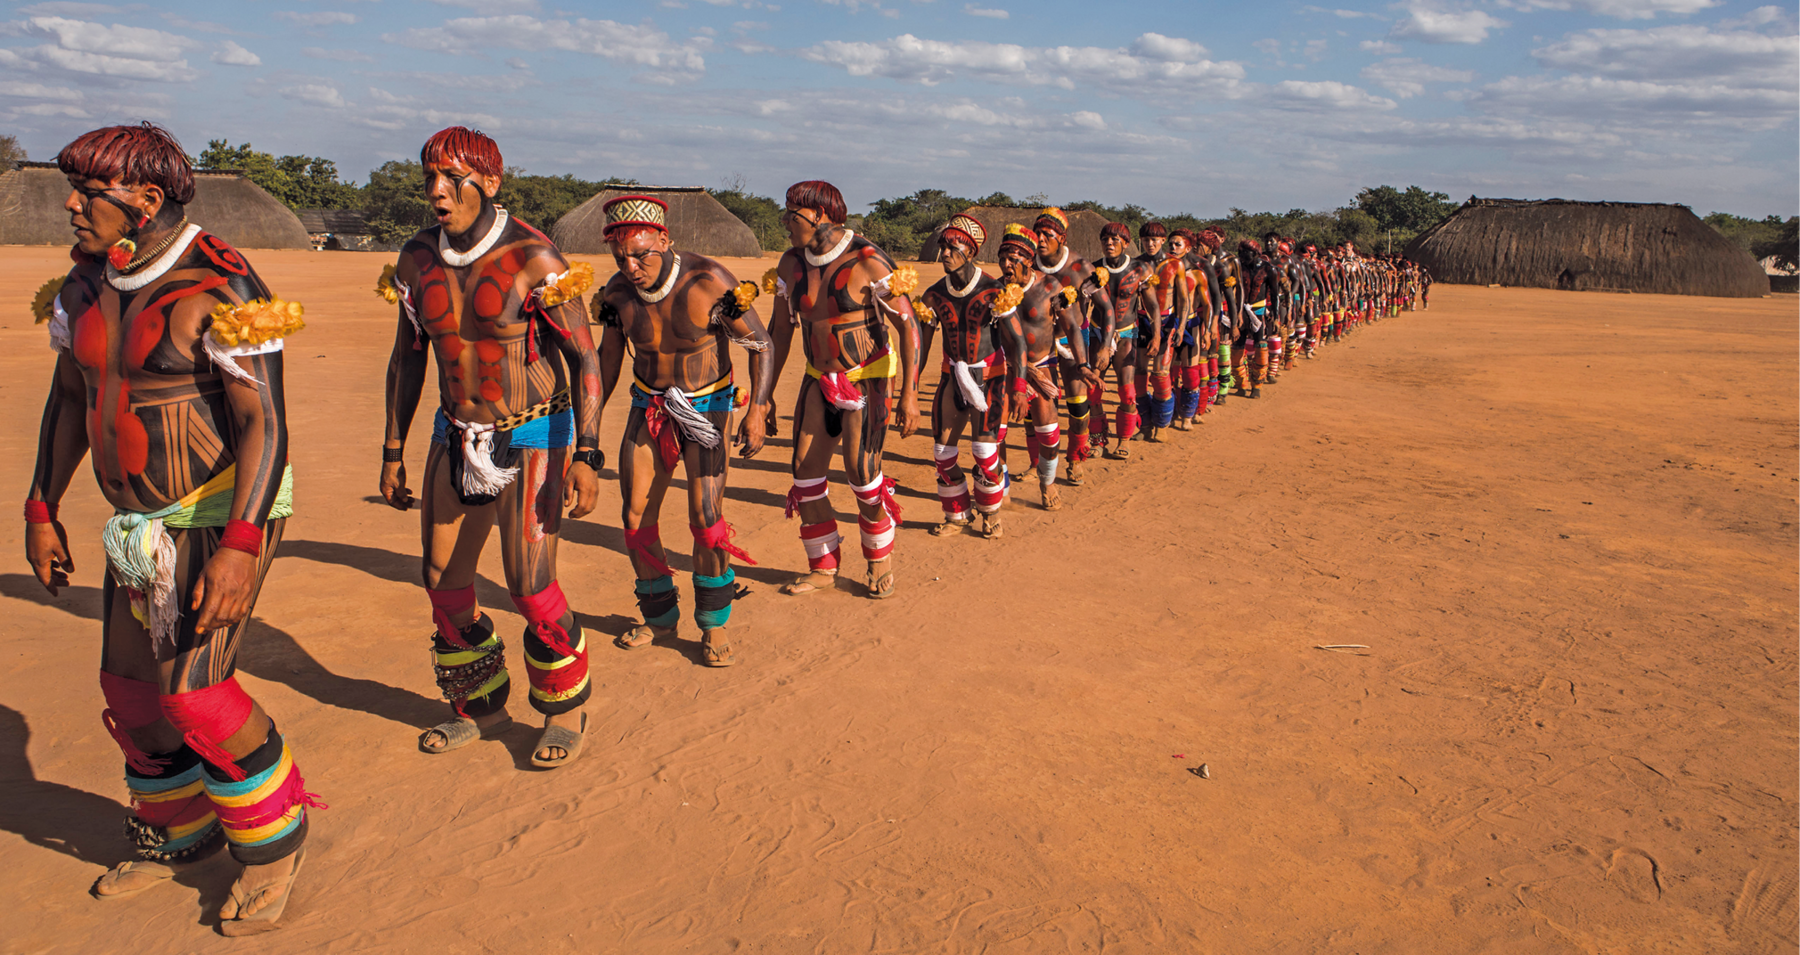 Fotografia. Indígenas alinhados em uma longa fila sobre chão de terra. Estão com o cabelo pintado de vermelho e desenhos ornamentando o corpo. Usam adereços nos braços e nas pernas. Ao fundo, várias ocas.